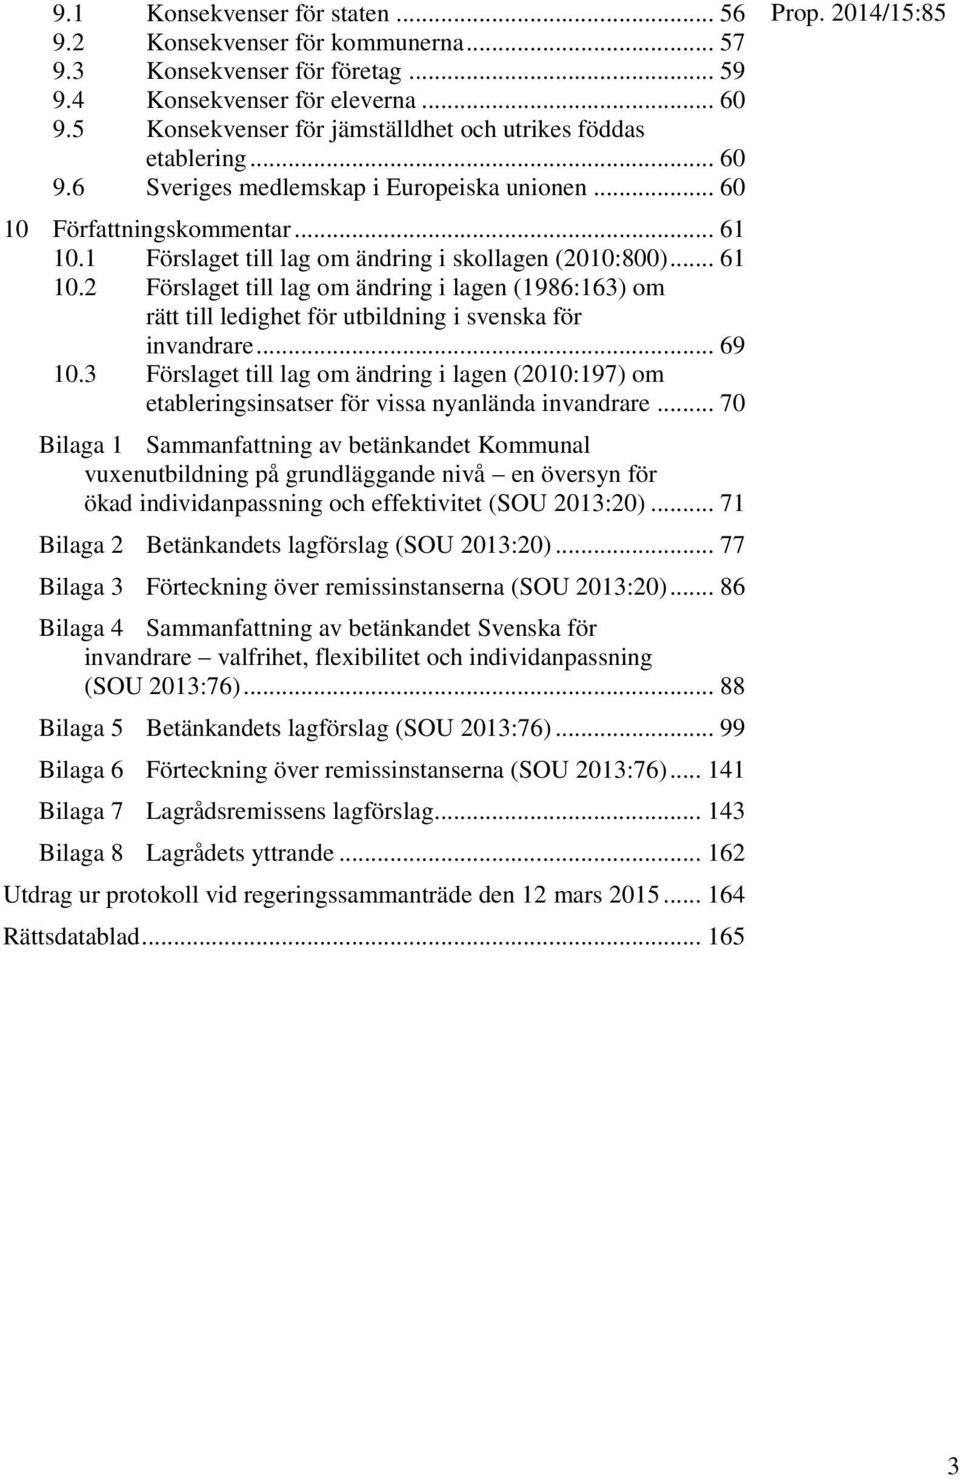 1 Förslaget till lag om ändring i skollagen (2010:800)... 61 10.2 Förslaget till lag om ändring i lagen (1986:163) om rätt till ledighet för utbildning i svenska för invandrare... 69 10.